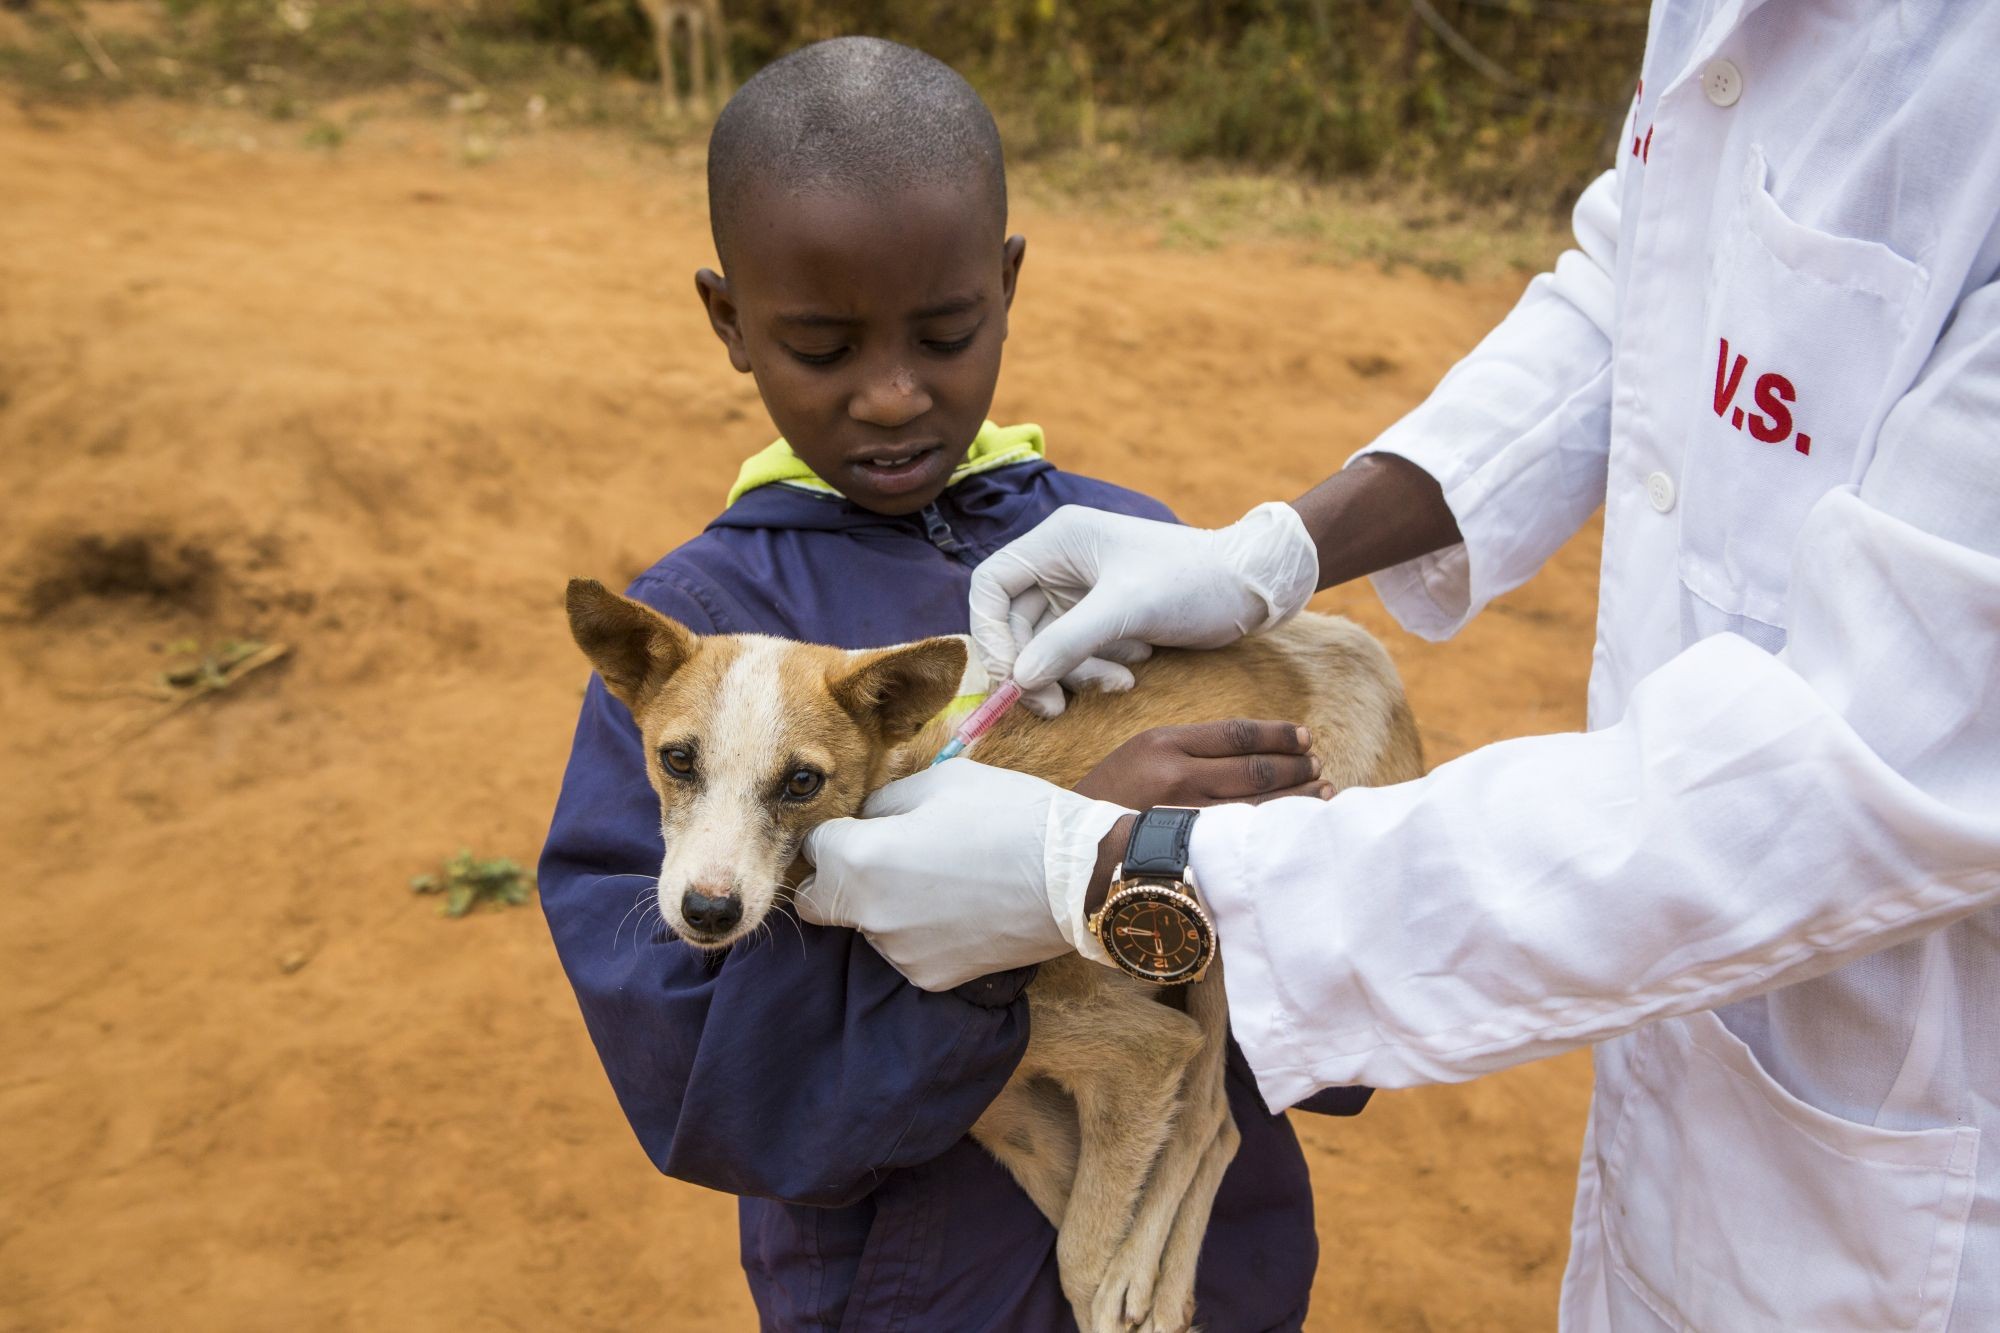 Her i Kenya – og mange ander steder i verden – er hunde i fare for at blive dræbt, fordi mennesker frygter, at de smitter med rabies. Ved at vaccinere hundene mod rabies, kan vi både beskytte dem mod sygdommen og sikre dem mod at blive slået ihjel.